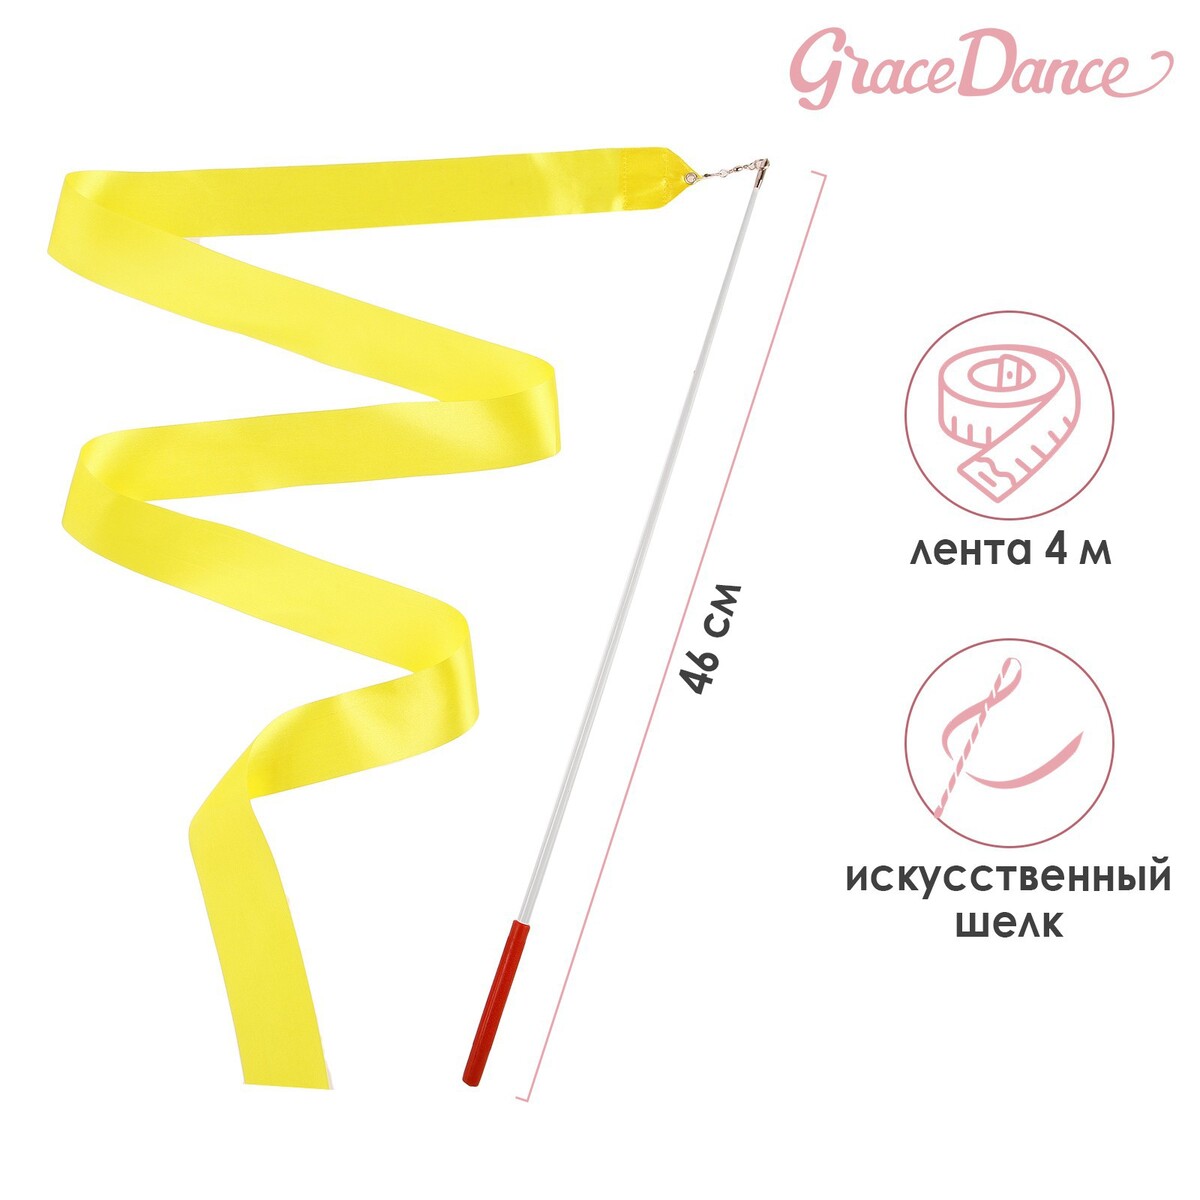 Лента для художественной гимнастики с палочкой grace dance, 4 м, цвет желтый лента фиксации rockbros для перевозки и хранения велосипедов зеленый rb 51210071002